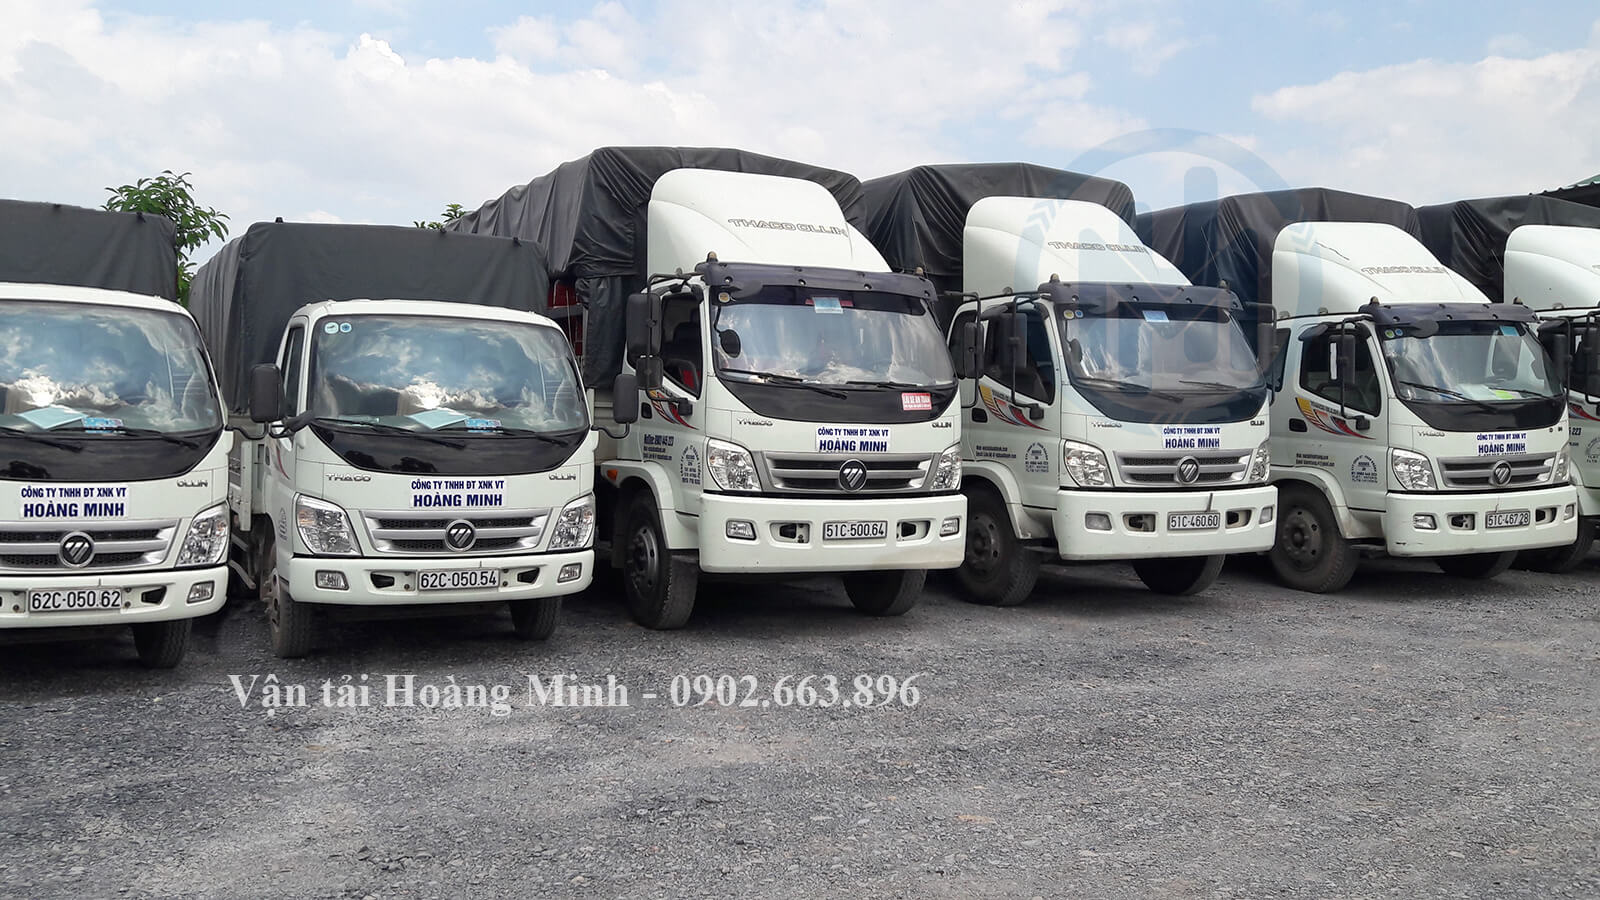 Vận tải Hoàng Minh đơn vị chuyên cho thuê xe tải chở hàng 2.5 tấn trên thị trường.jpg